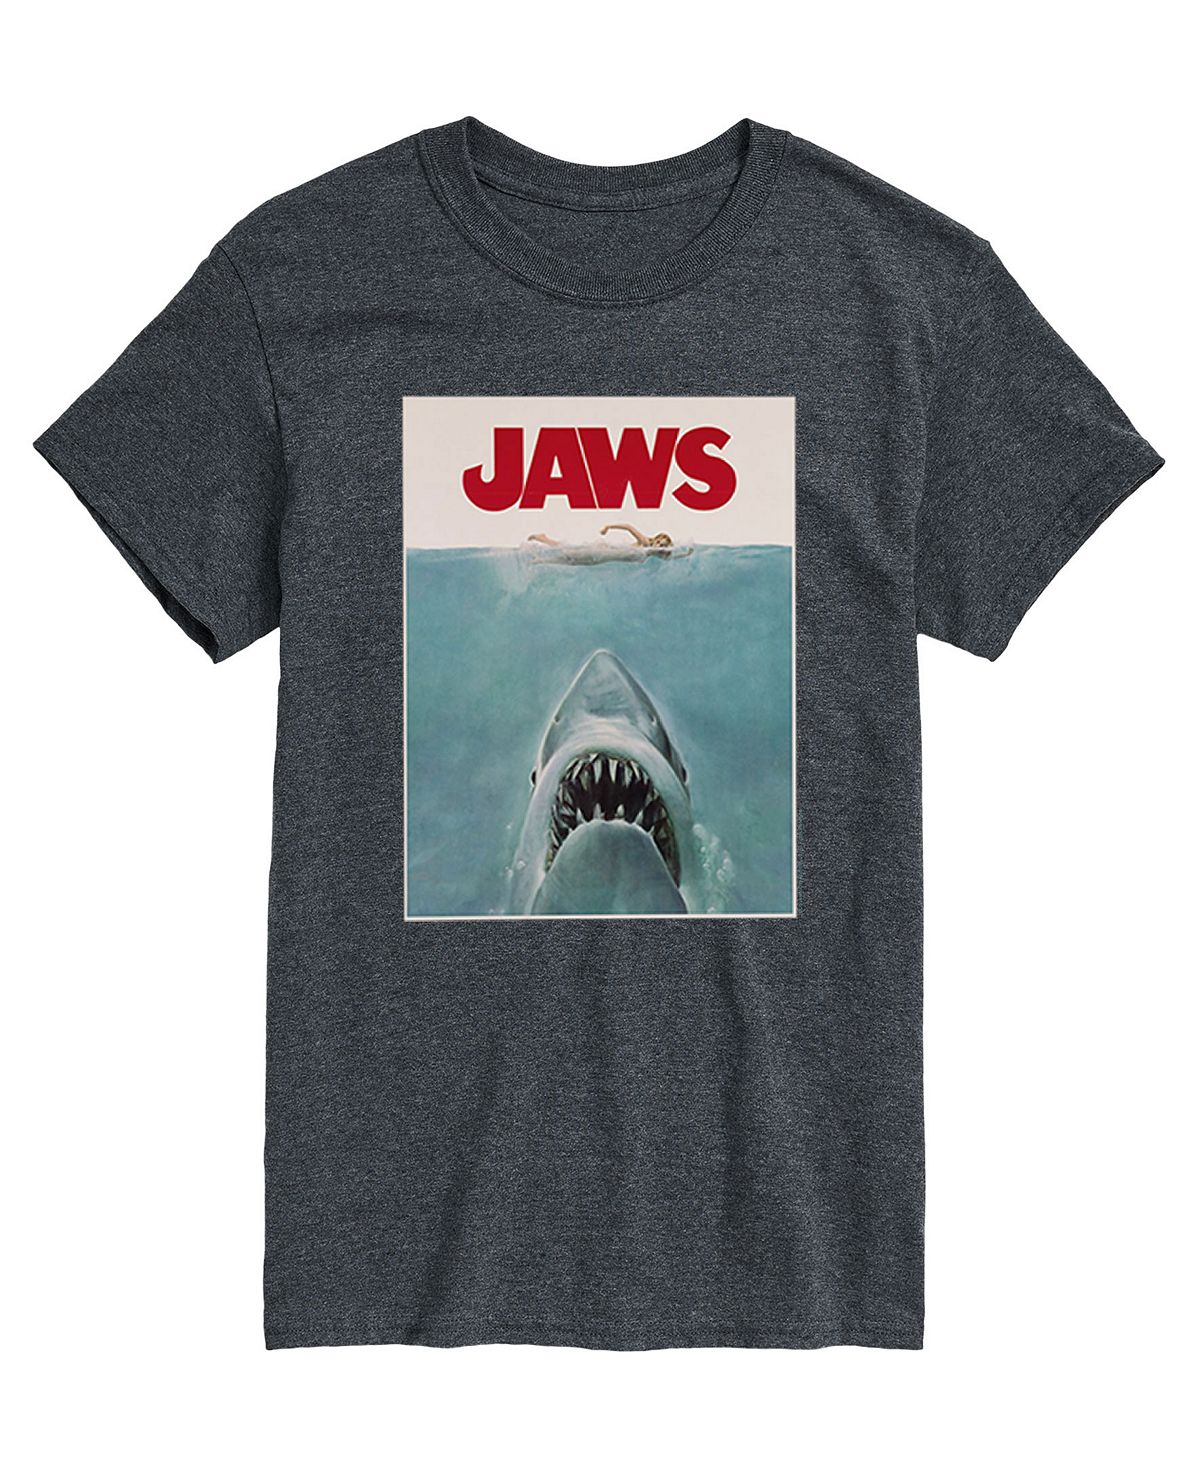 Мужская футболка с плакатом Jaws AIRWAVES 6 jaws lathe chuck stepped jaws k13 200